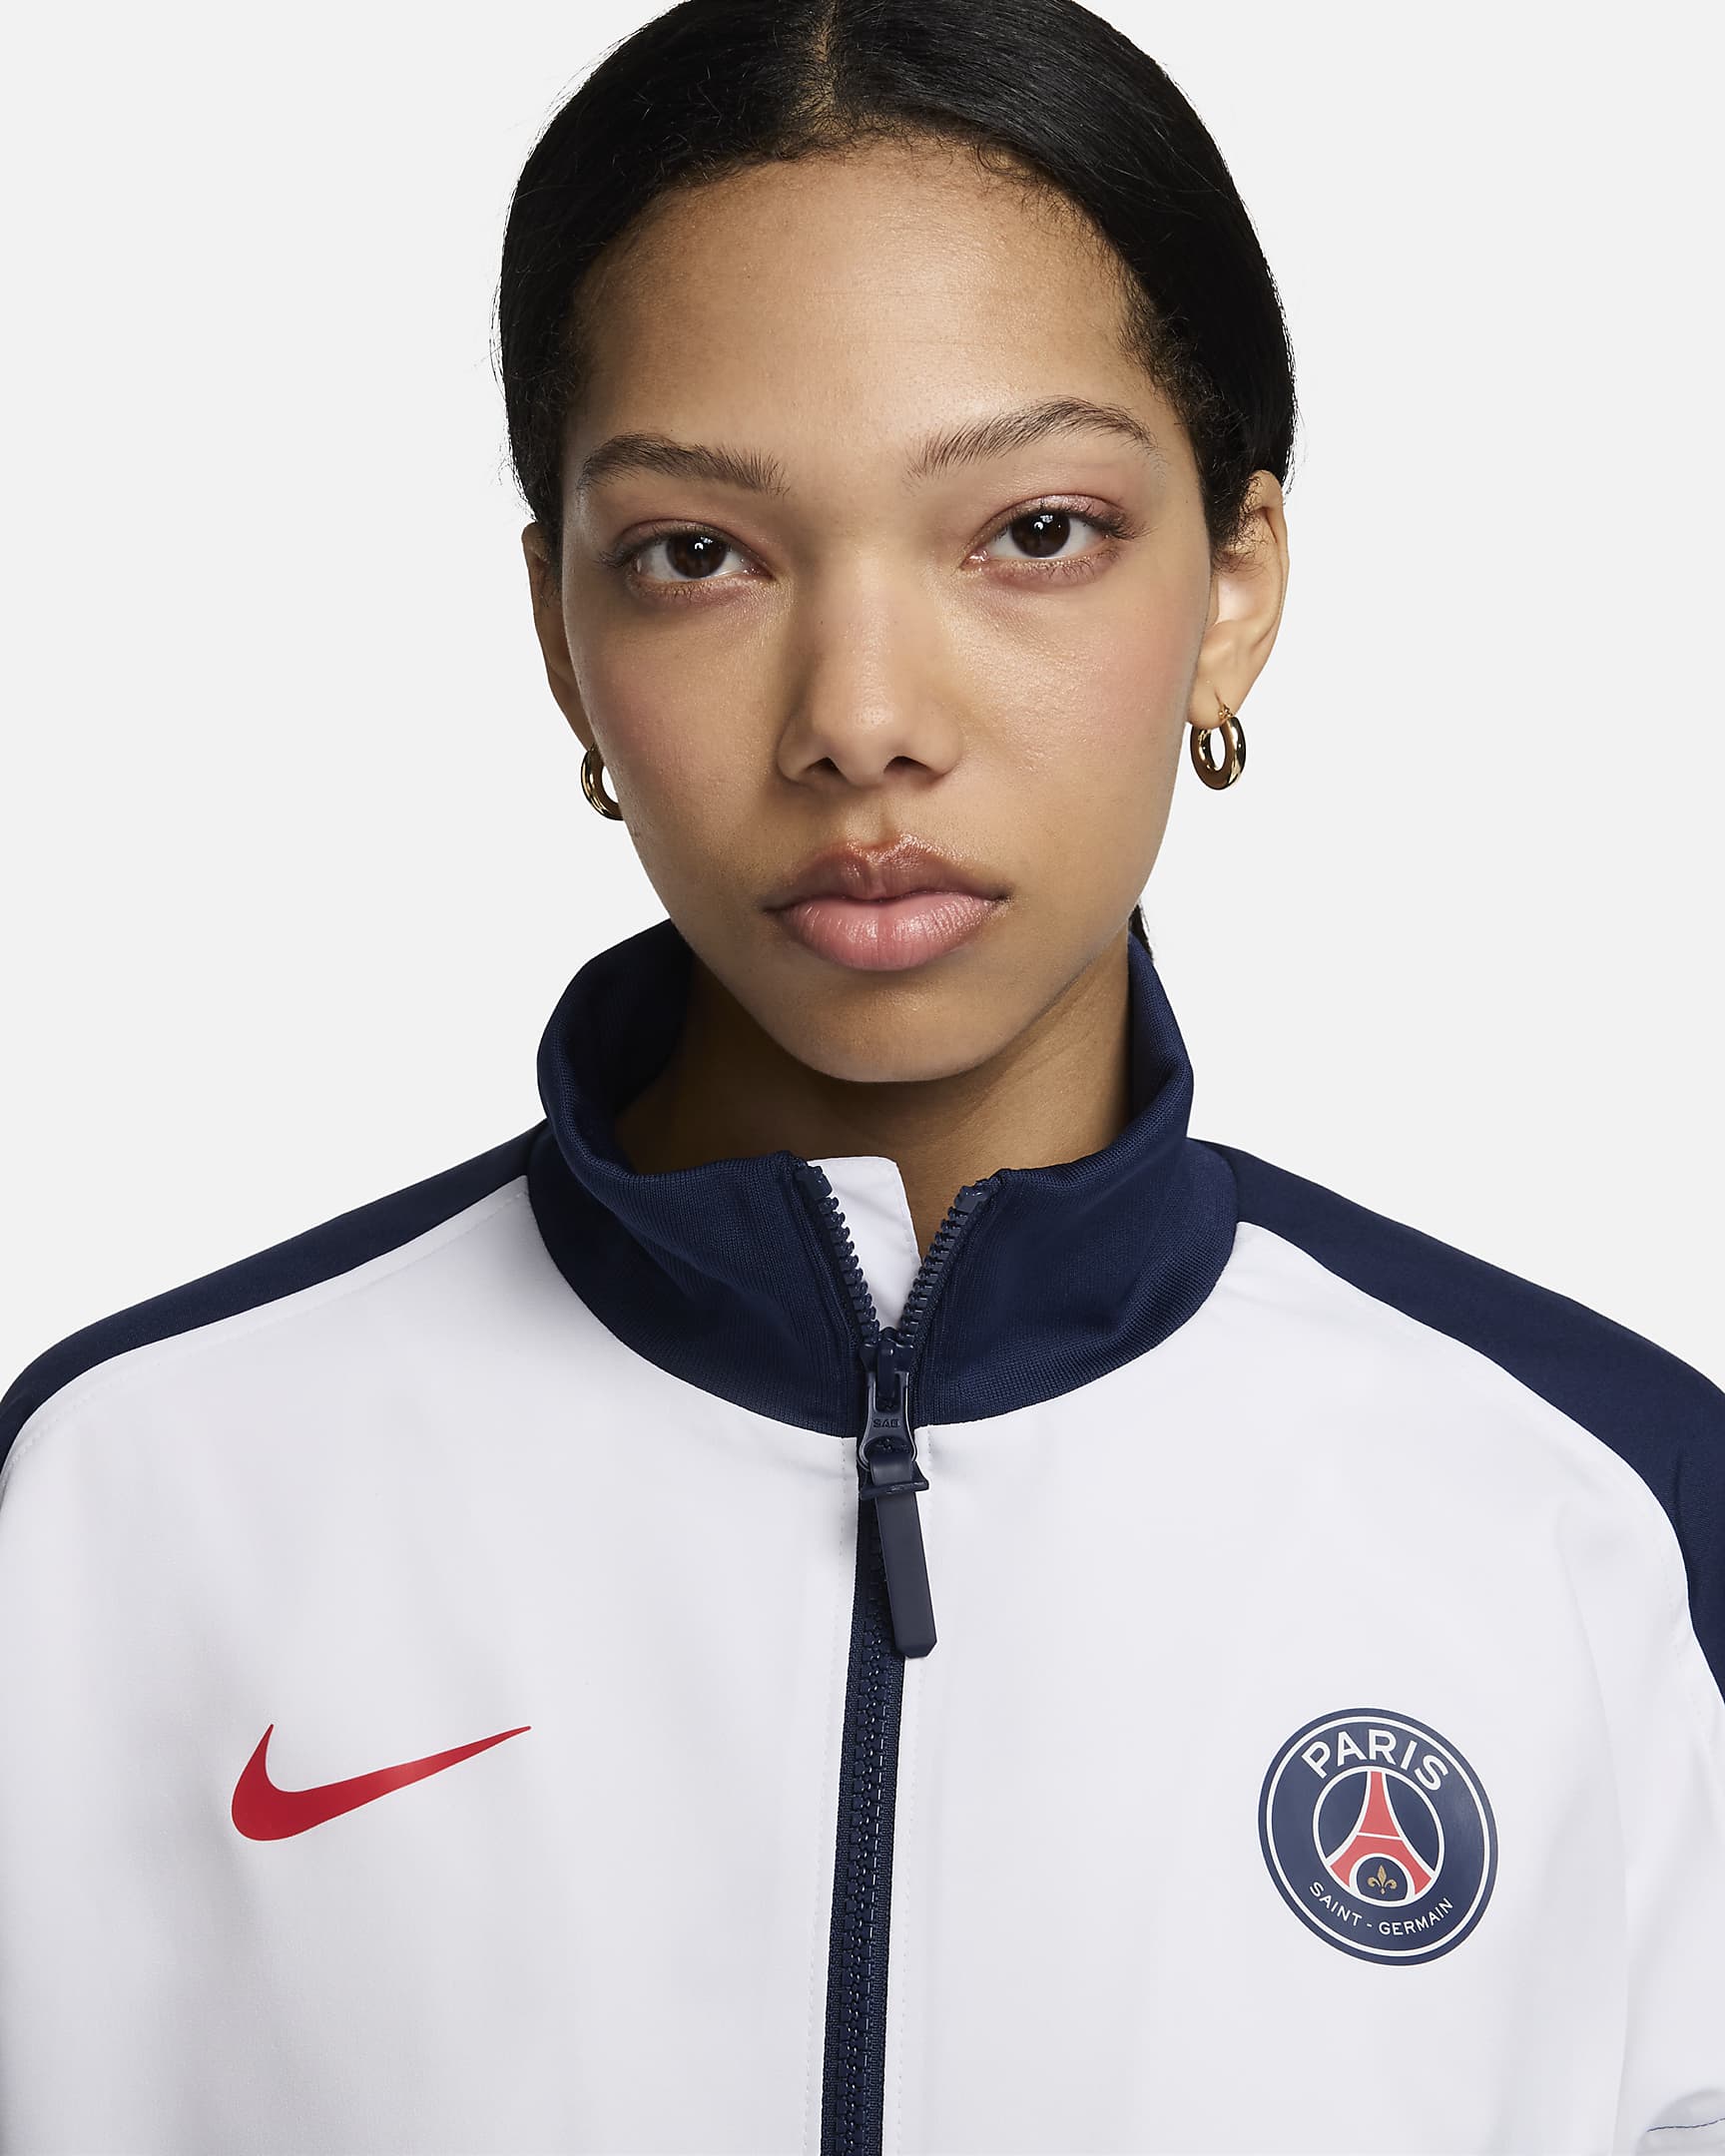 París Saint-Germain Strike Chaqueta de fútbol Nike Dri-FIT - Mujer - Blanco/Midnight Navy/University Red/University Red